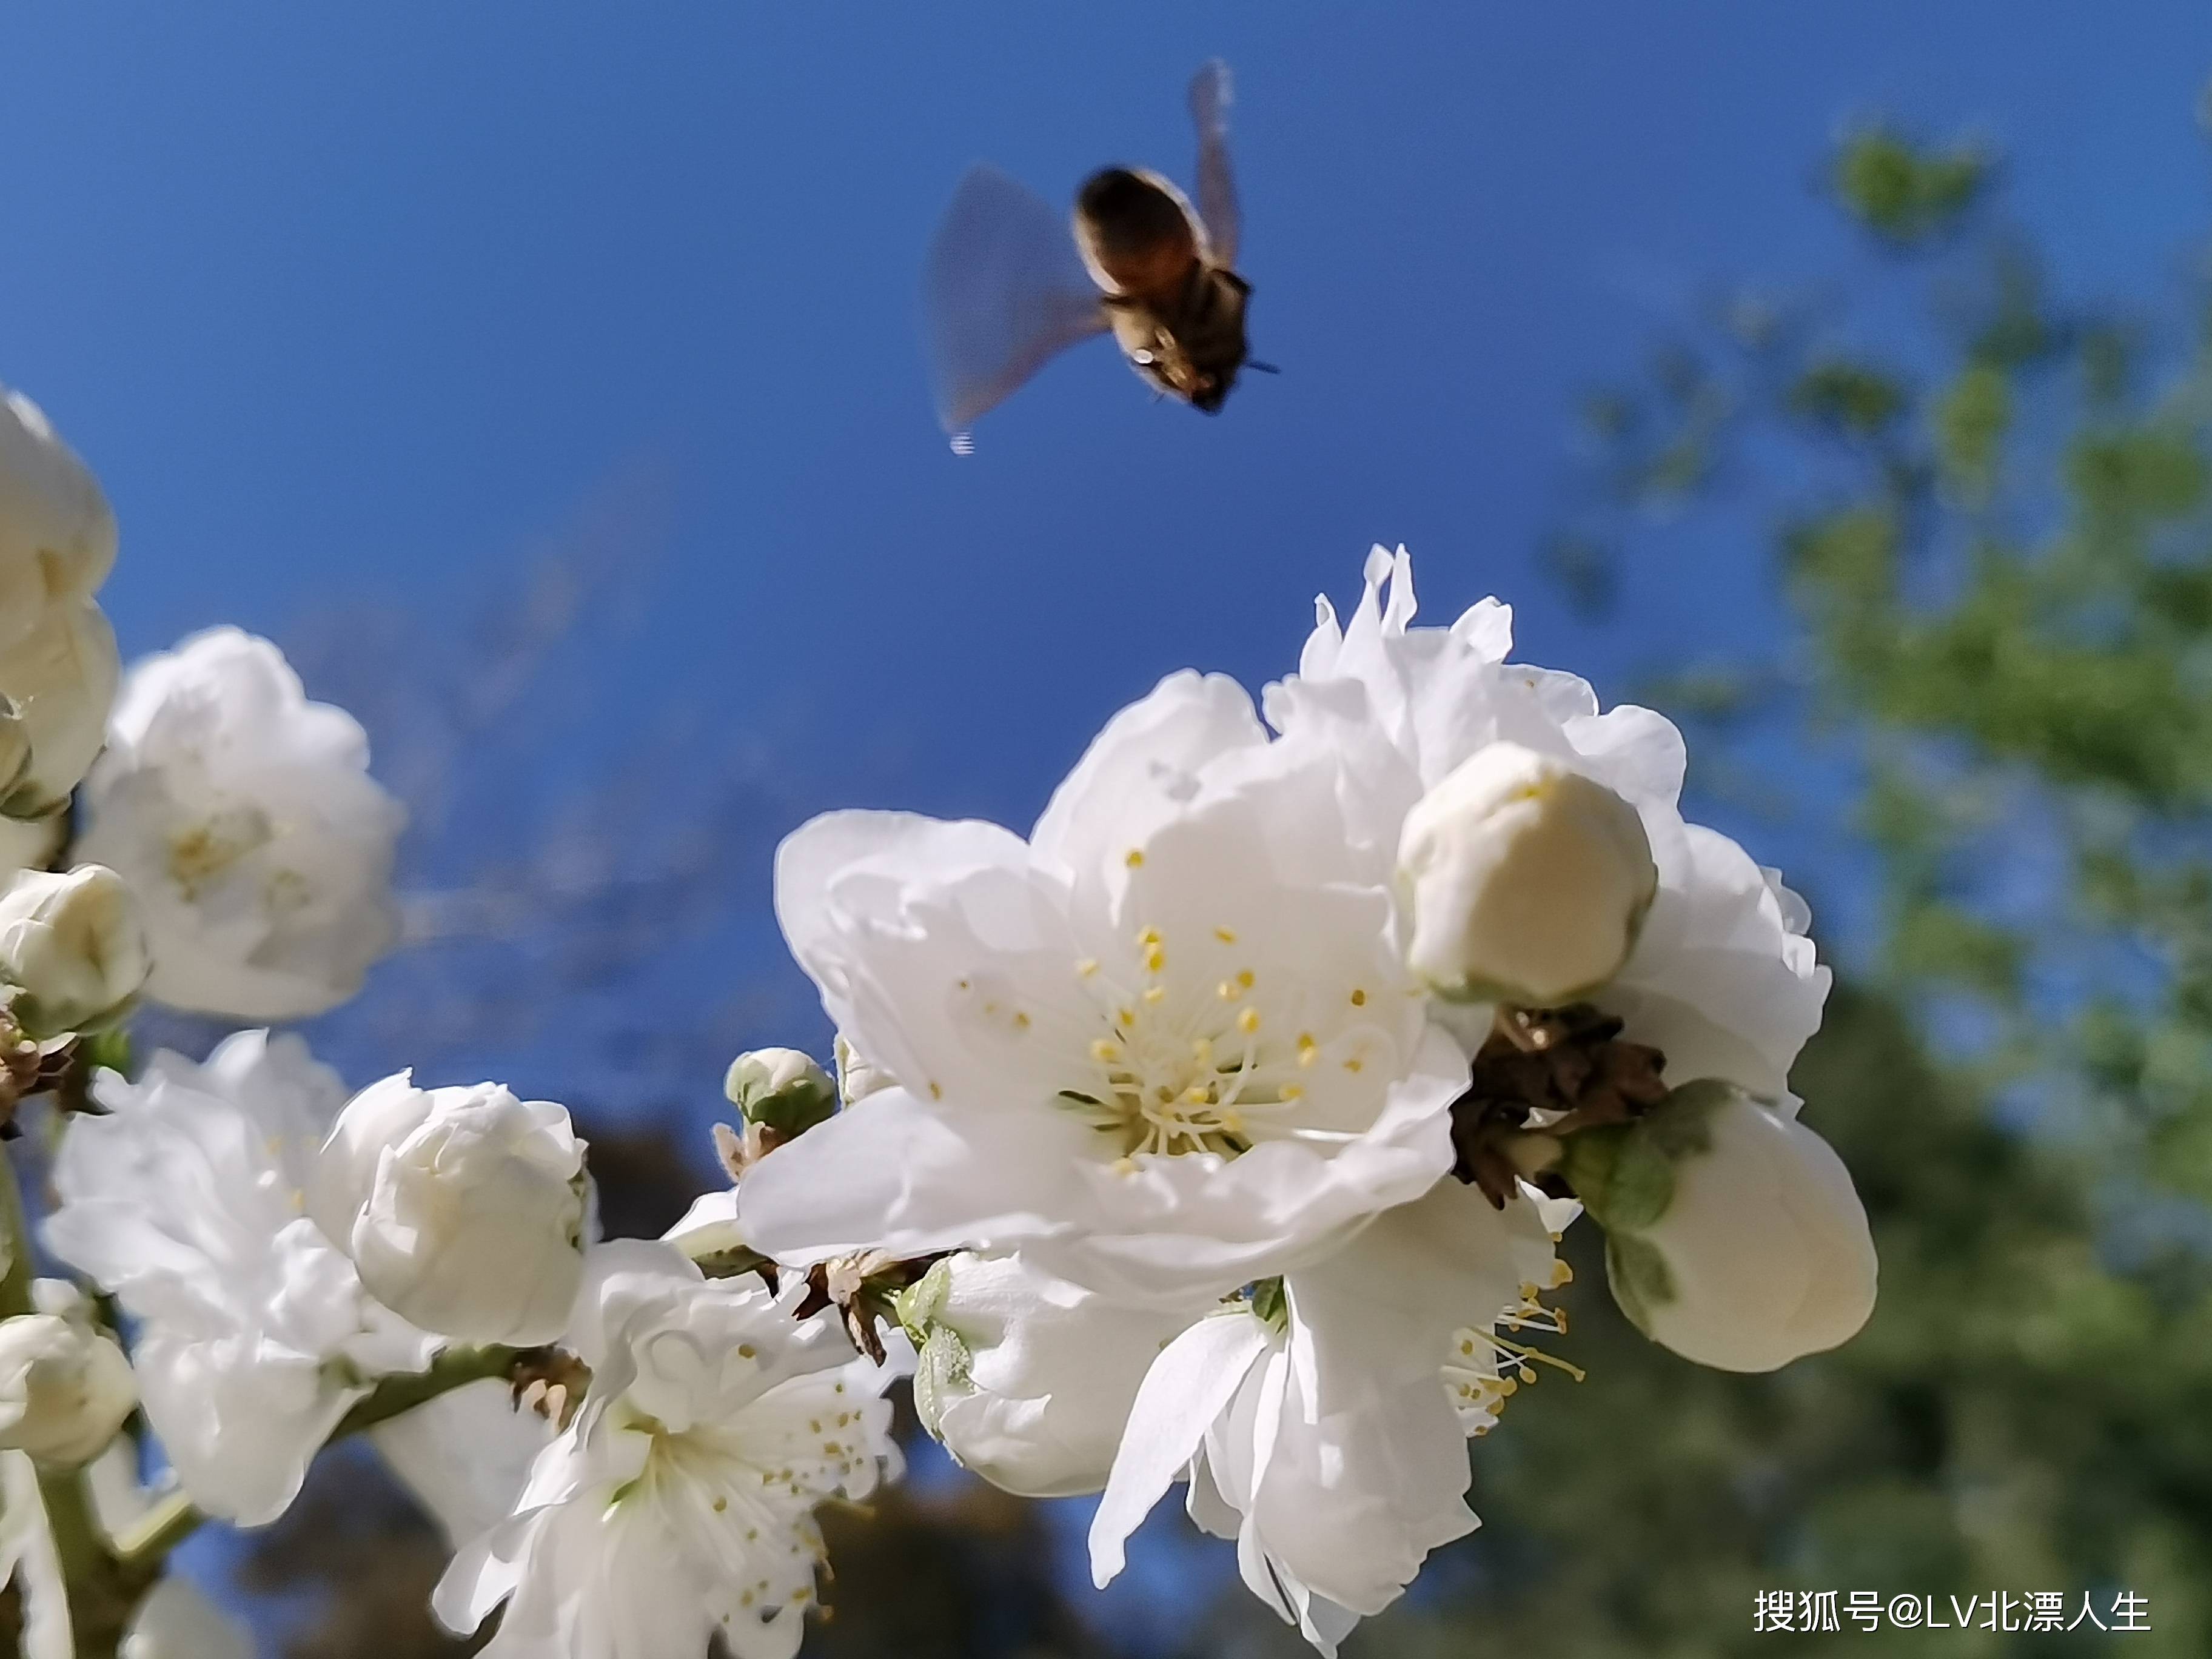 鲜花盛开,蜜蜂自来,精彩抓拍的一幅幅采蜜图